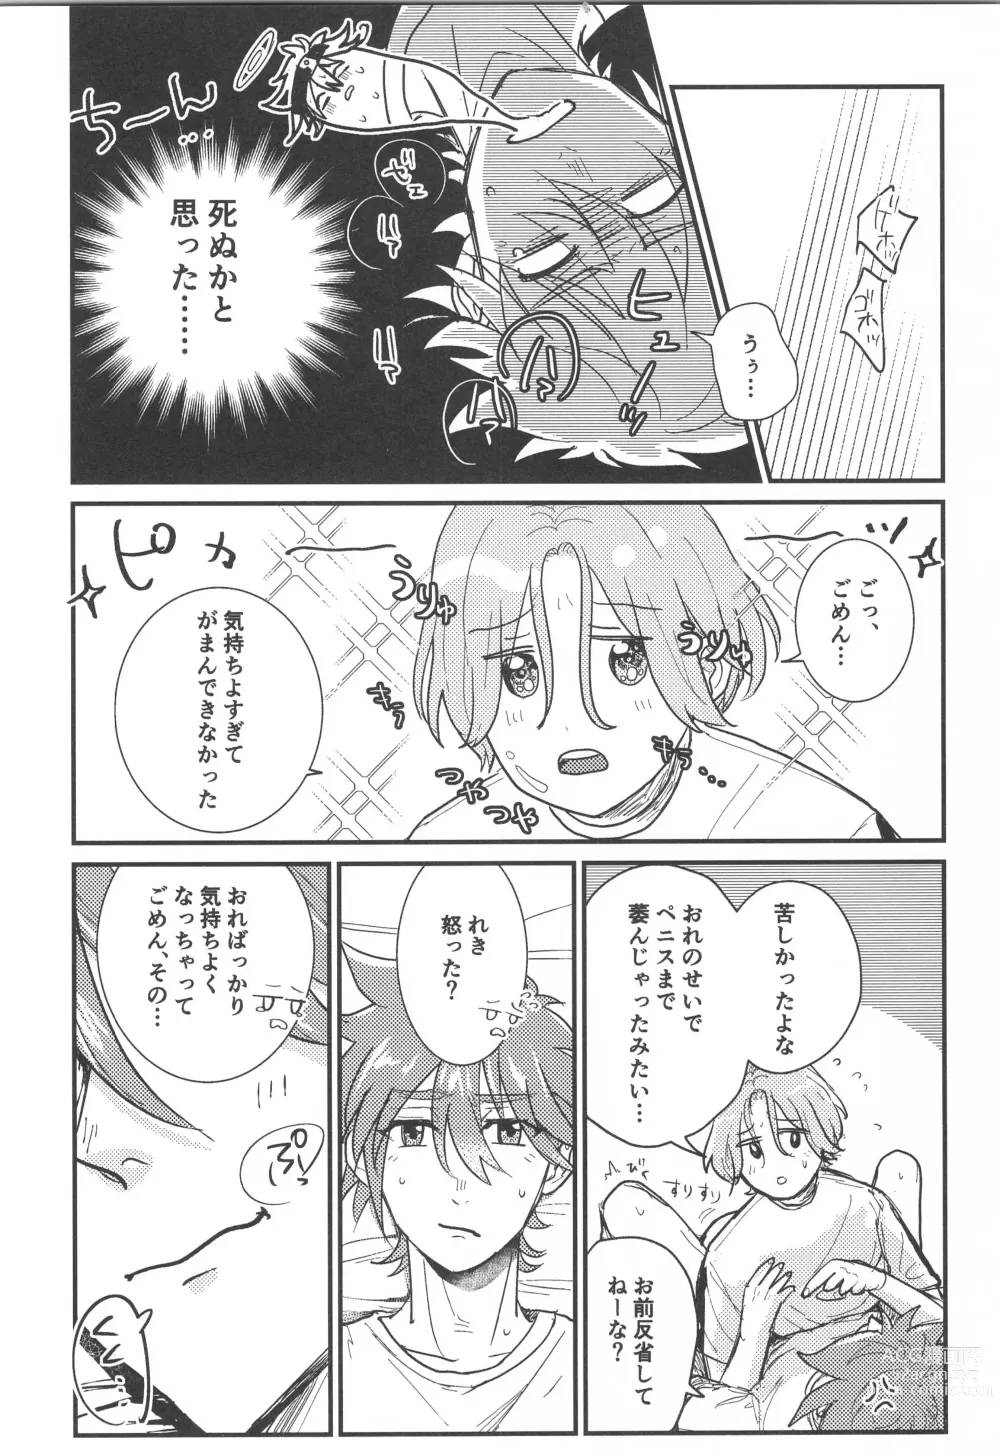 Page 23 of doujinshi Hodasare?